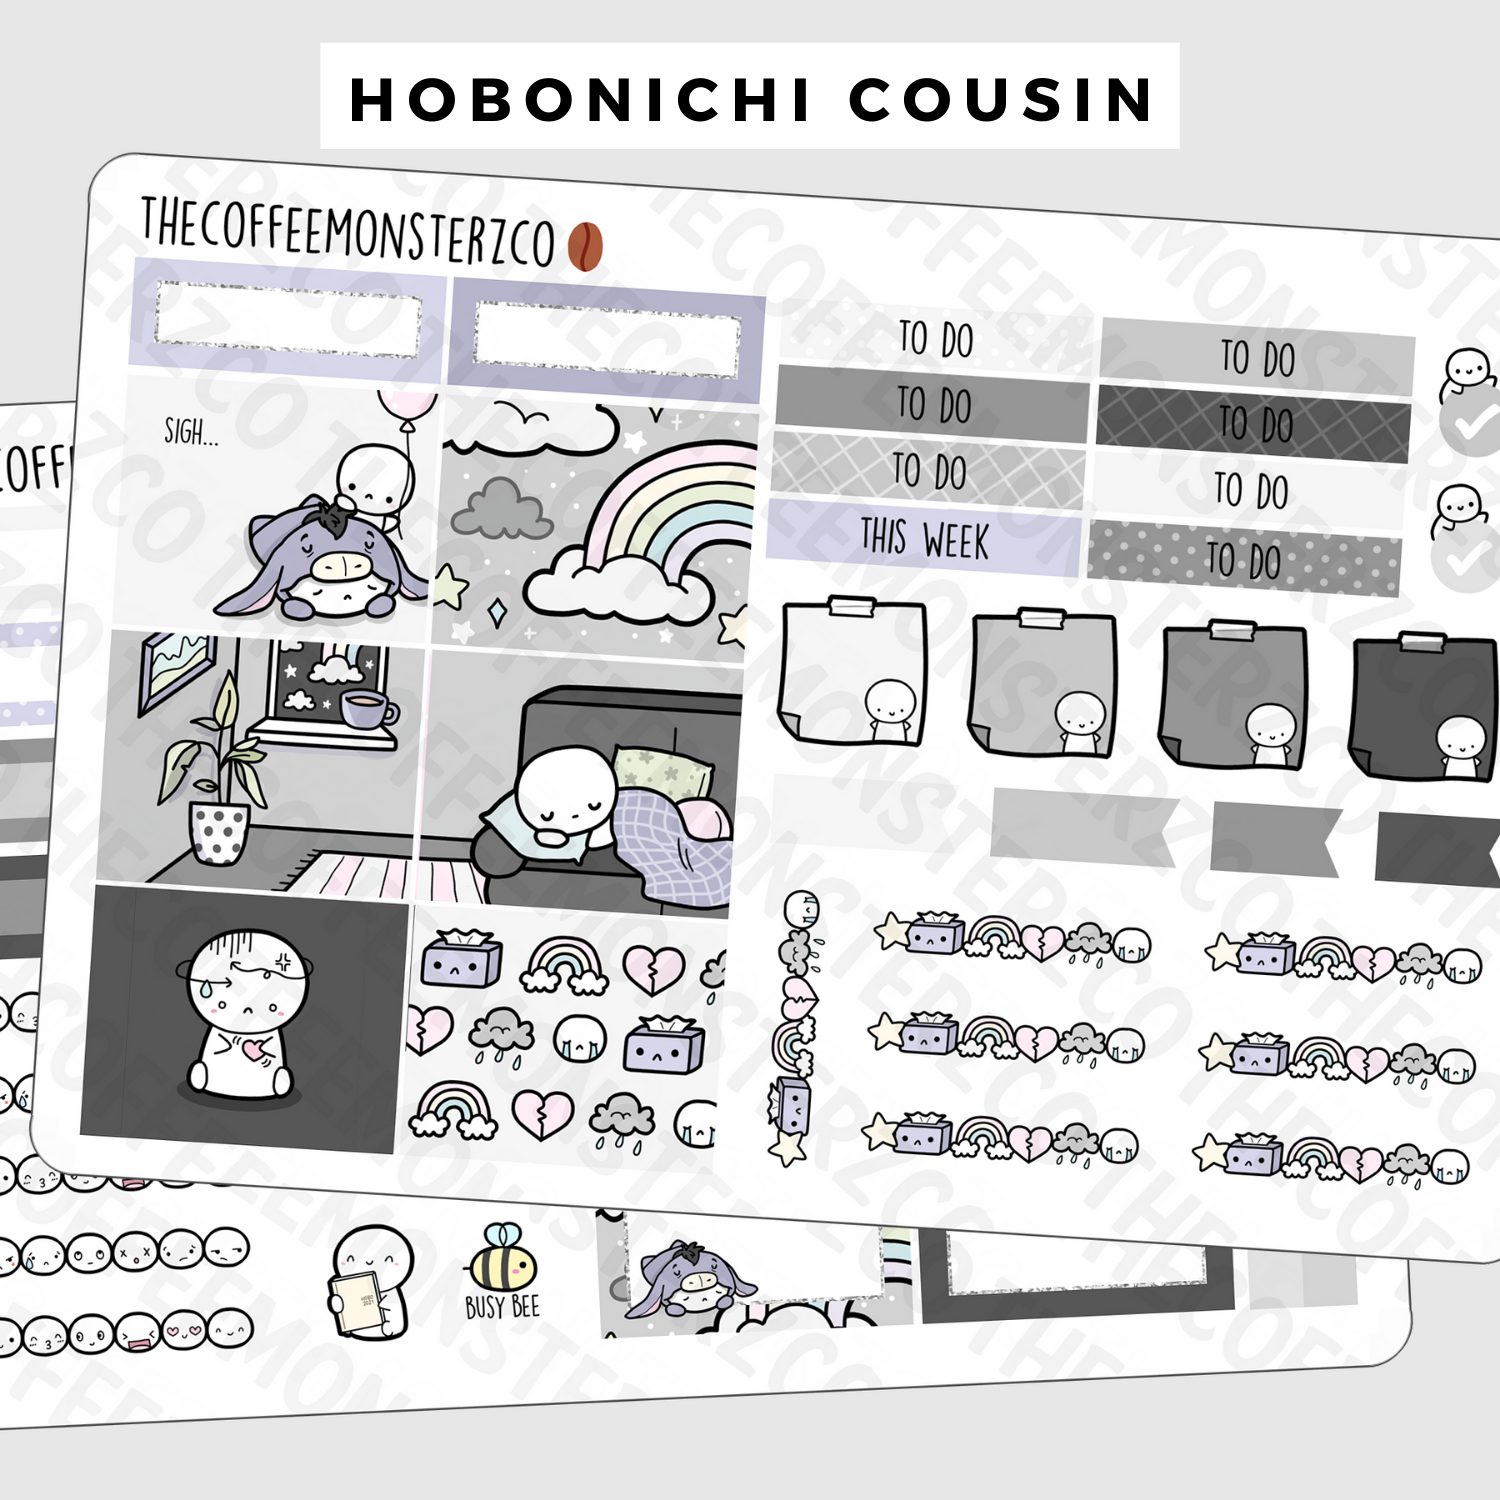 A Gloomy Week Hobonichi Cousin Kit